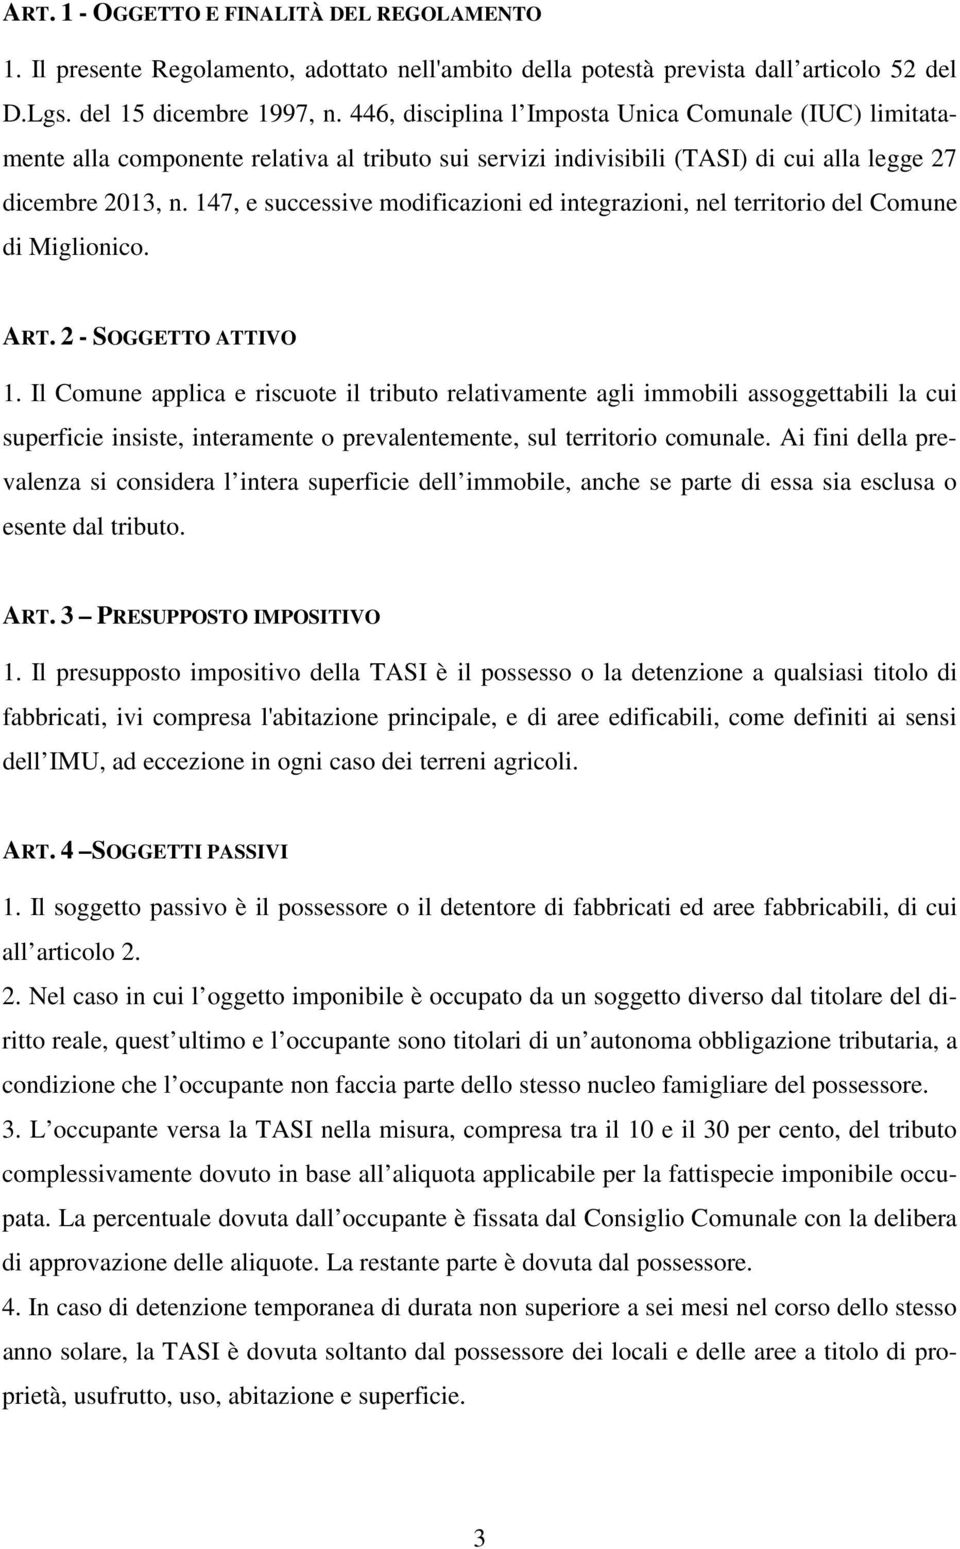 147, e successive modificazioni ed integrazioni, nel territorio del Comune di Miglionico. ART. 2 - SOGGETTO ATTIVO 1.